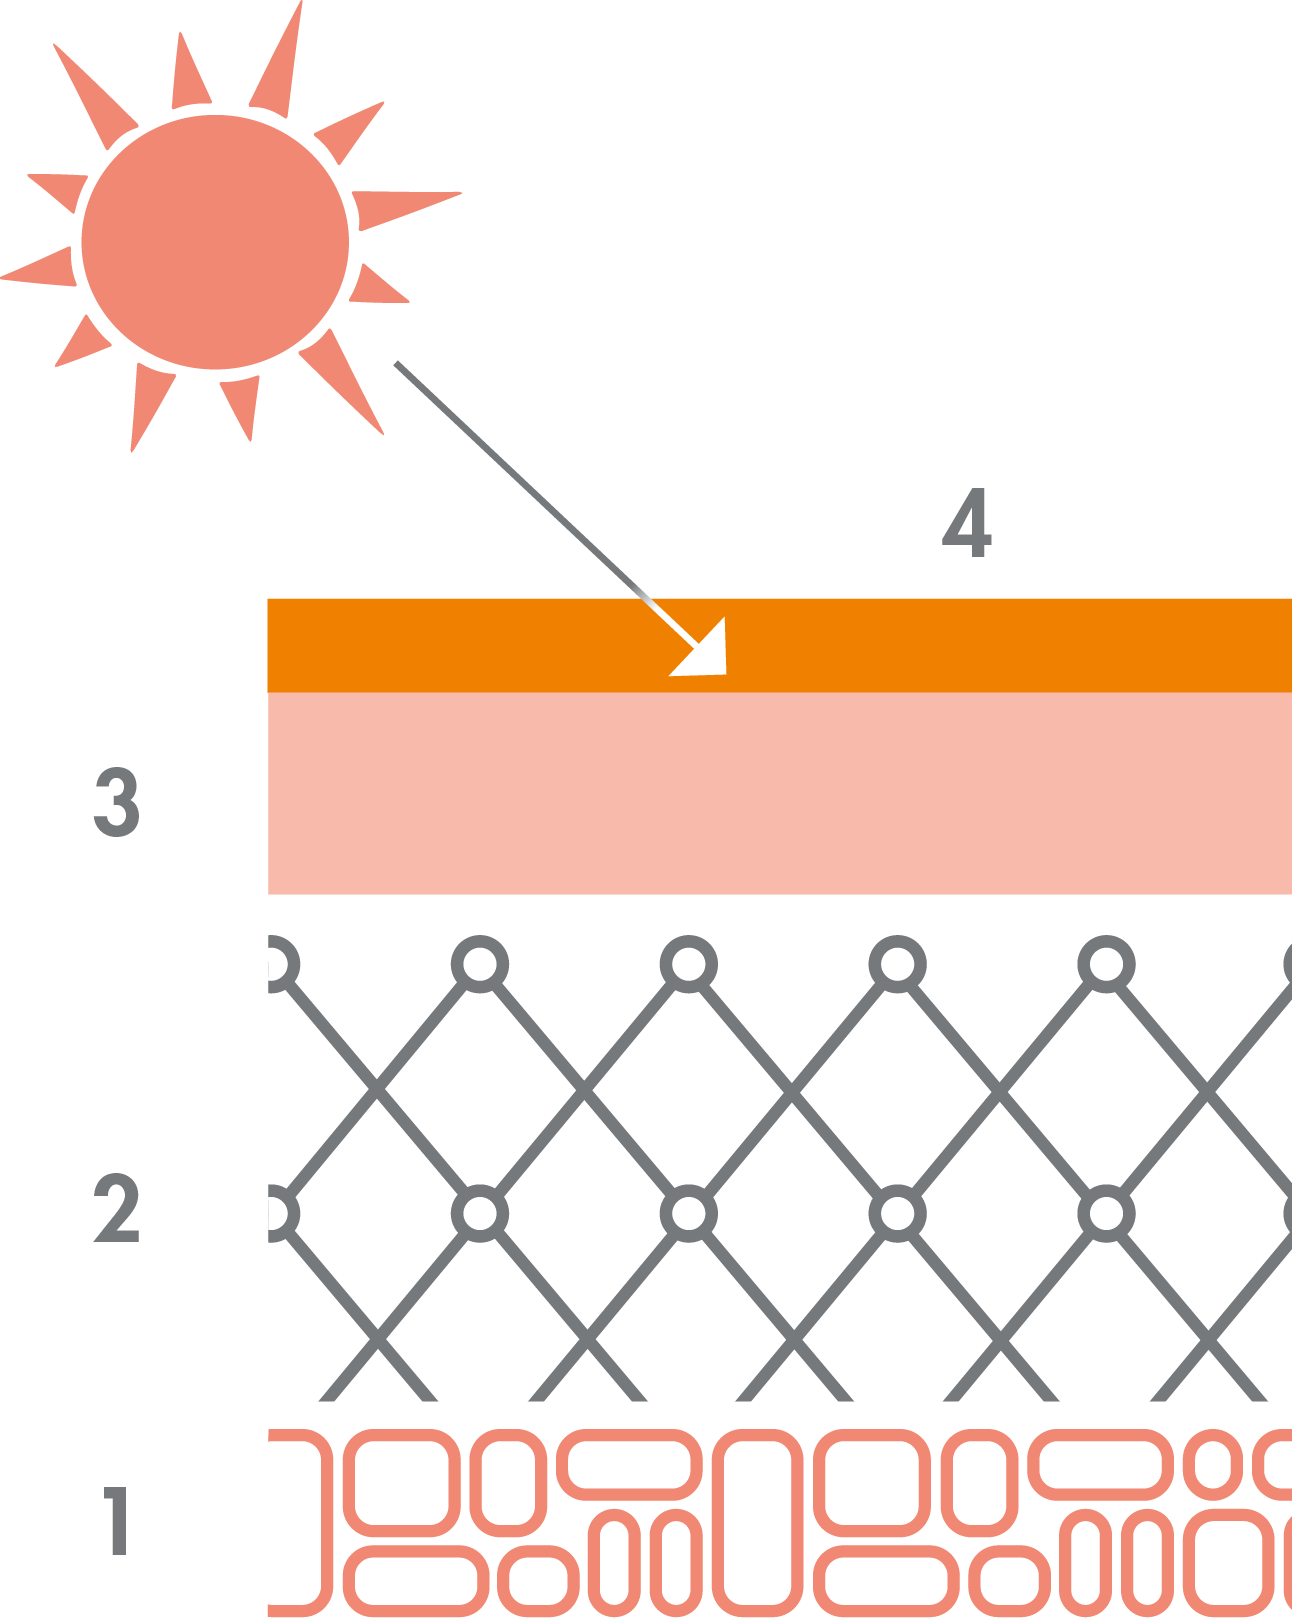 <p>1: Hipoderme; 2: Derme; 3: Epiderme; 4: Protetor solar</p>

